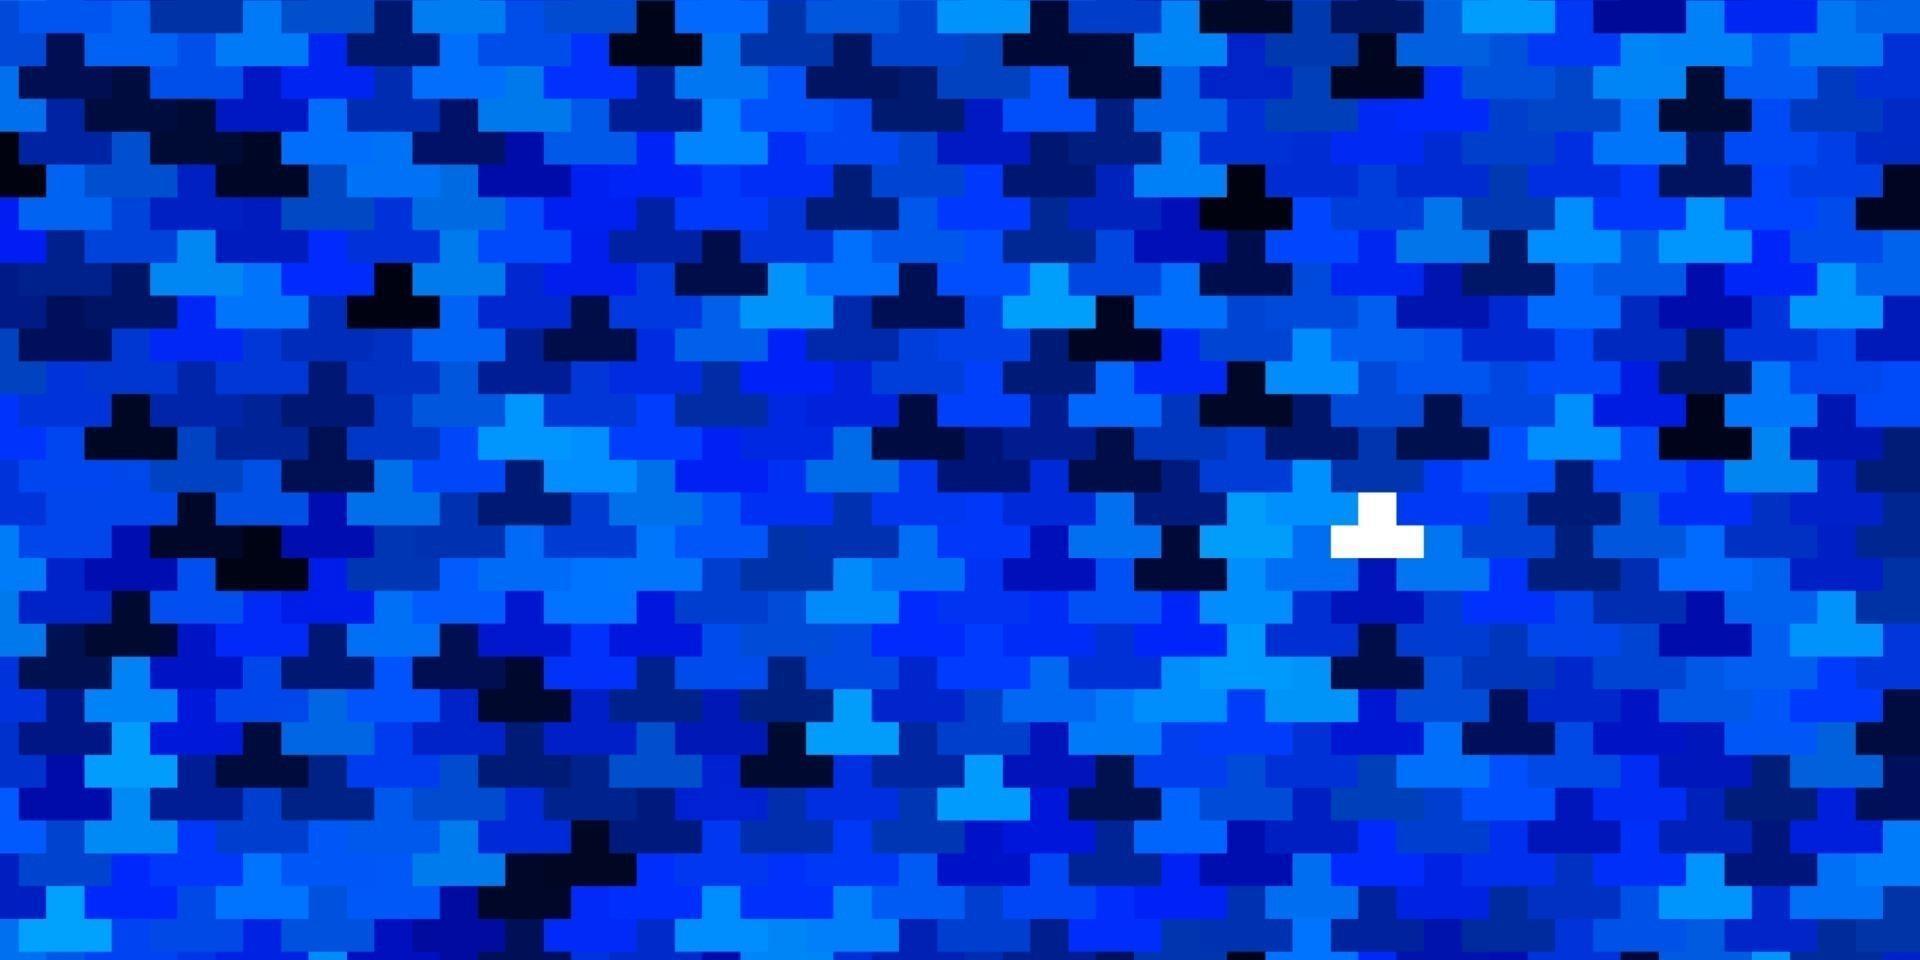 modelo de vetor azul escuro com retângulos.